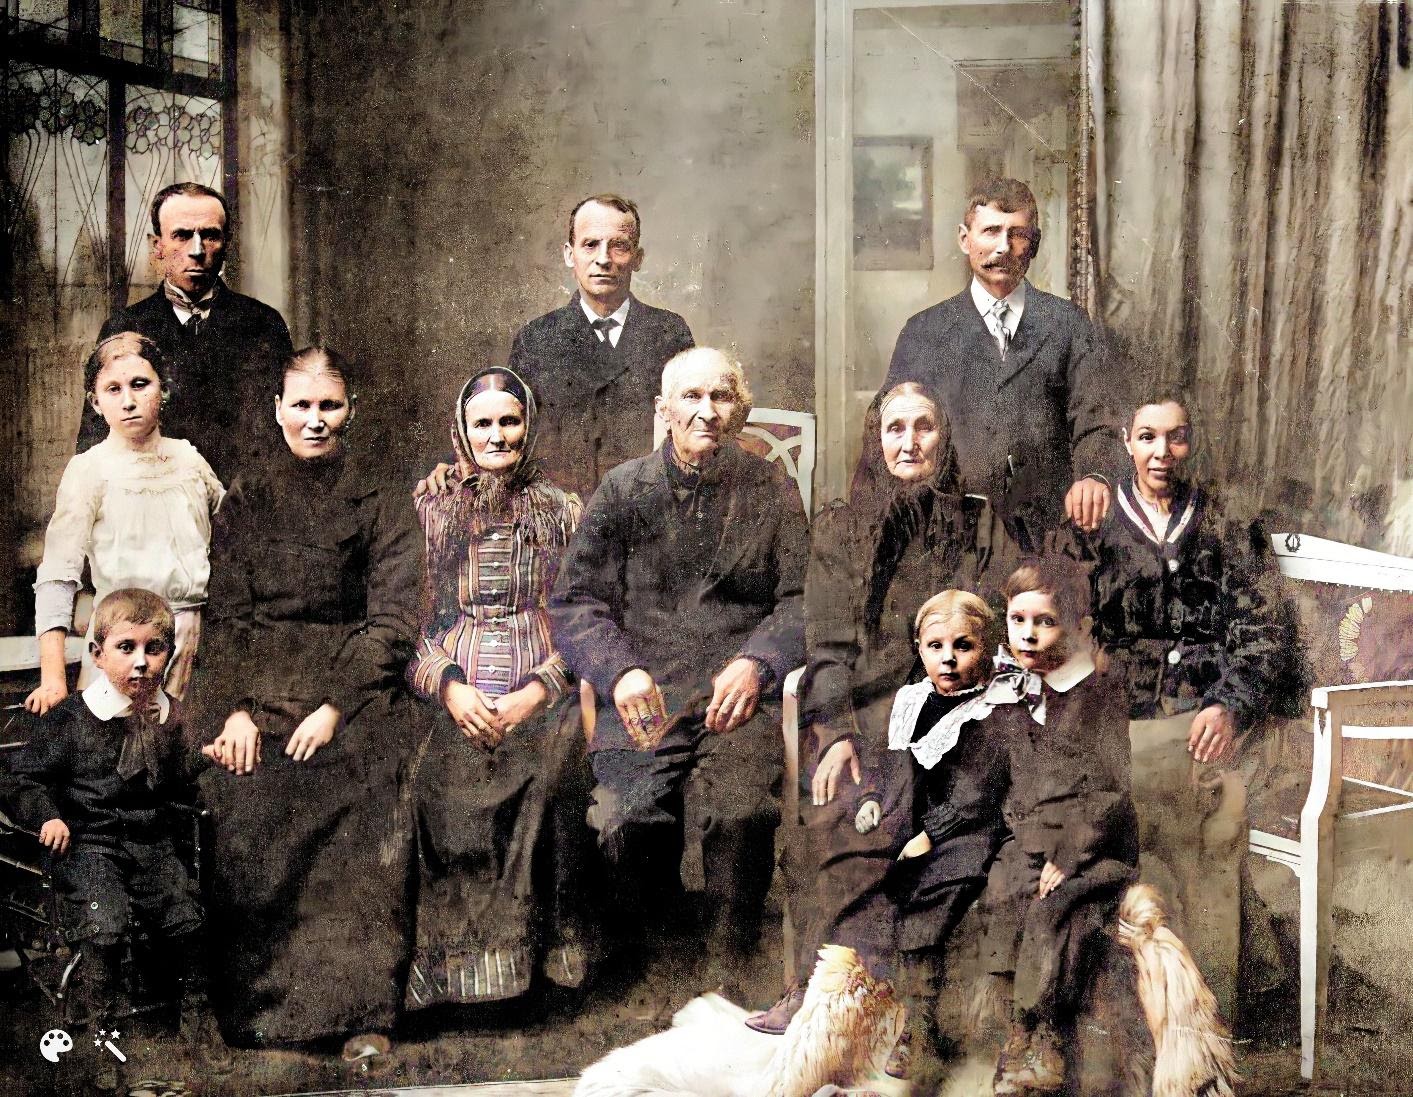 Familie von Josef Bayer III., meinem Urgroßvater (hintere Reihe, ganz rechts), um 1912, einschließlich meiner Urgroßmutter, seiner zweiten Frau Anna Bayerová, geb. Vacovská, und seiner Eltern (meine Ururgroßeltern), Josef Bayer II. und Petronilla Bayerová.